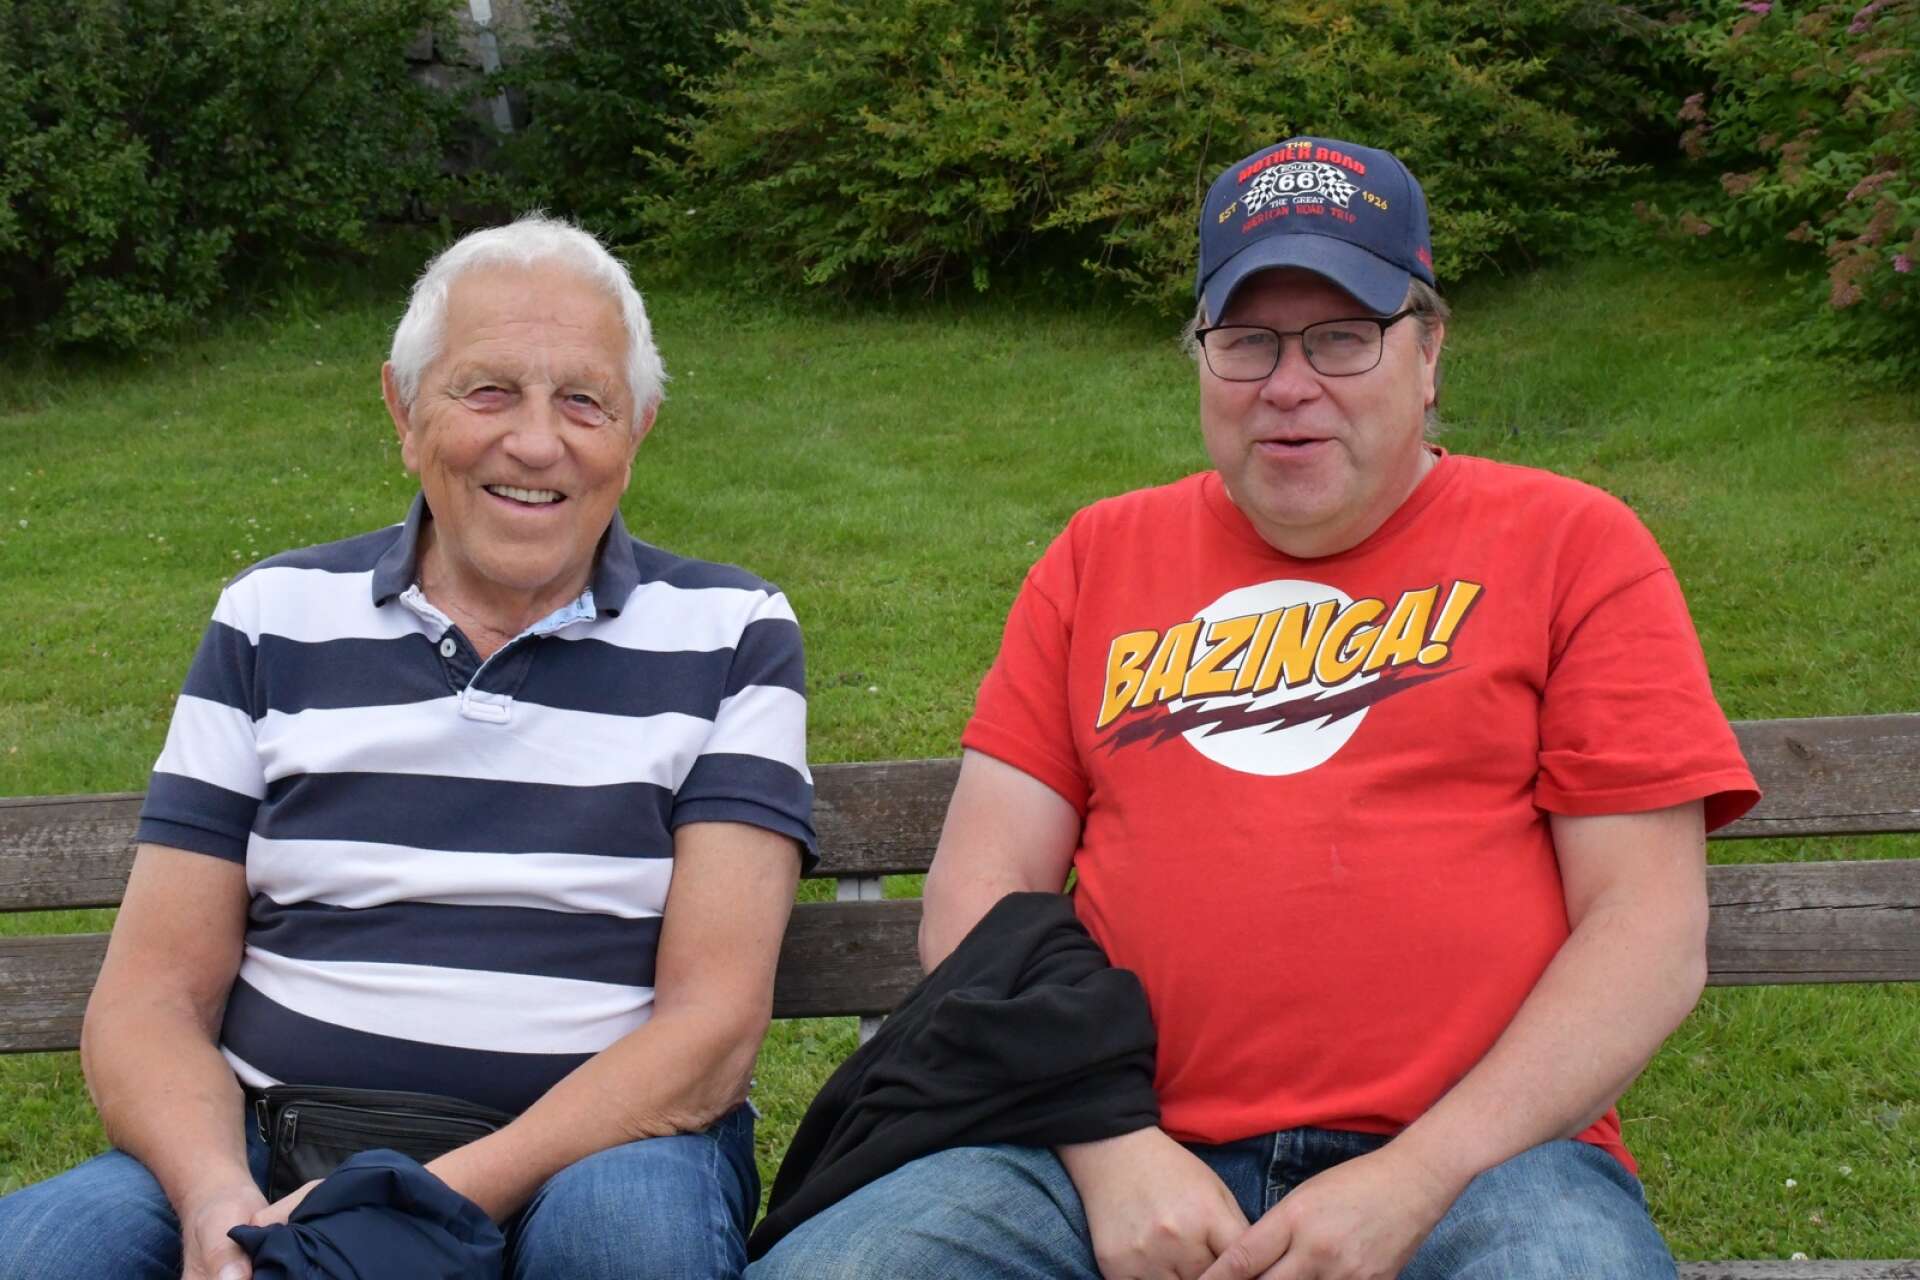 Far och son John-Arne Magnusson och Ulf Magnusson från Charlottenberg besökte veteranbilsdagen. Intresset för gamla bilar har de gemensamt. Ulf äger själv en Cadillac från 1976.